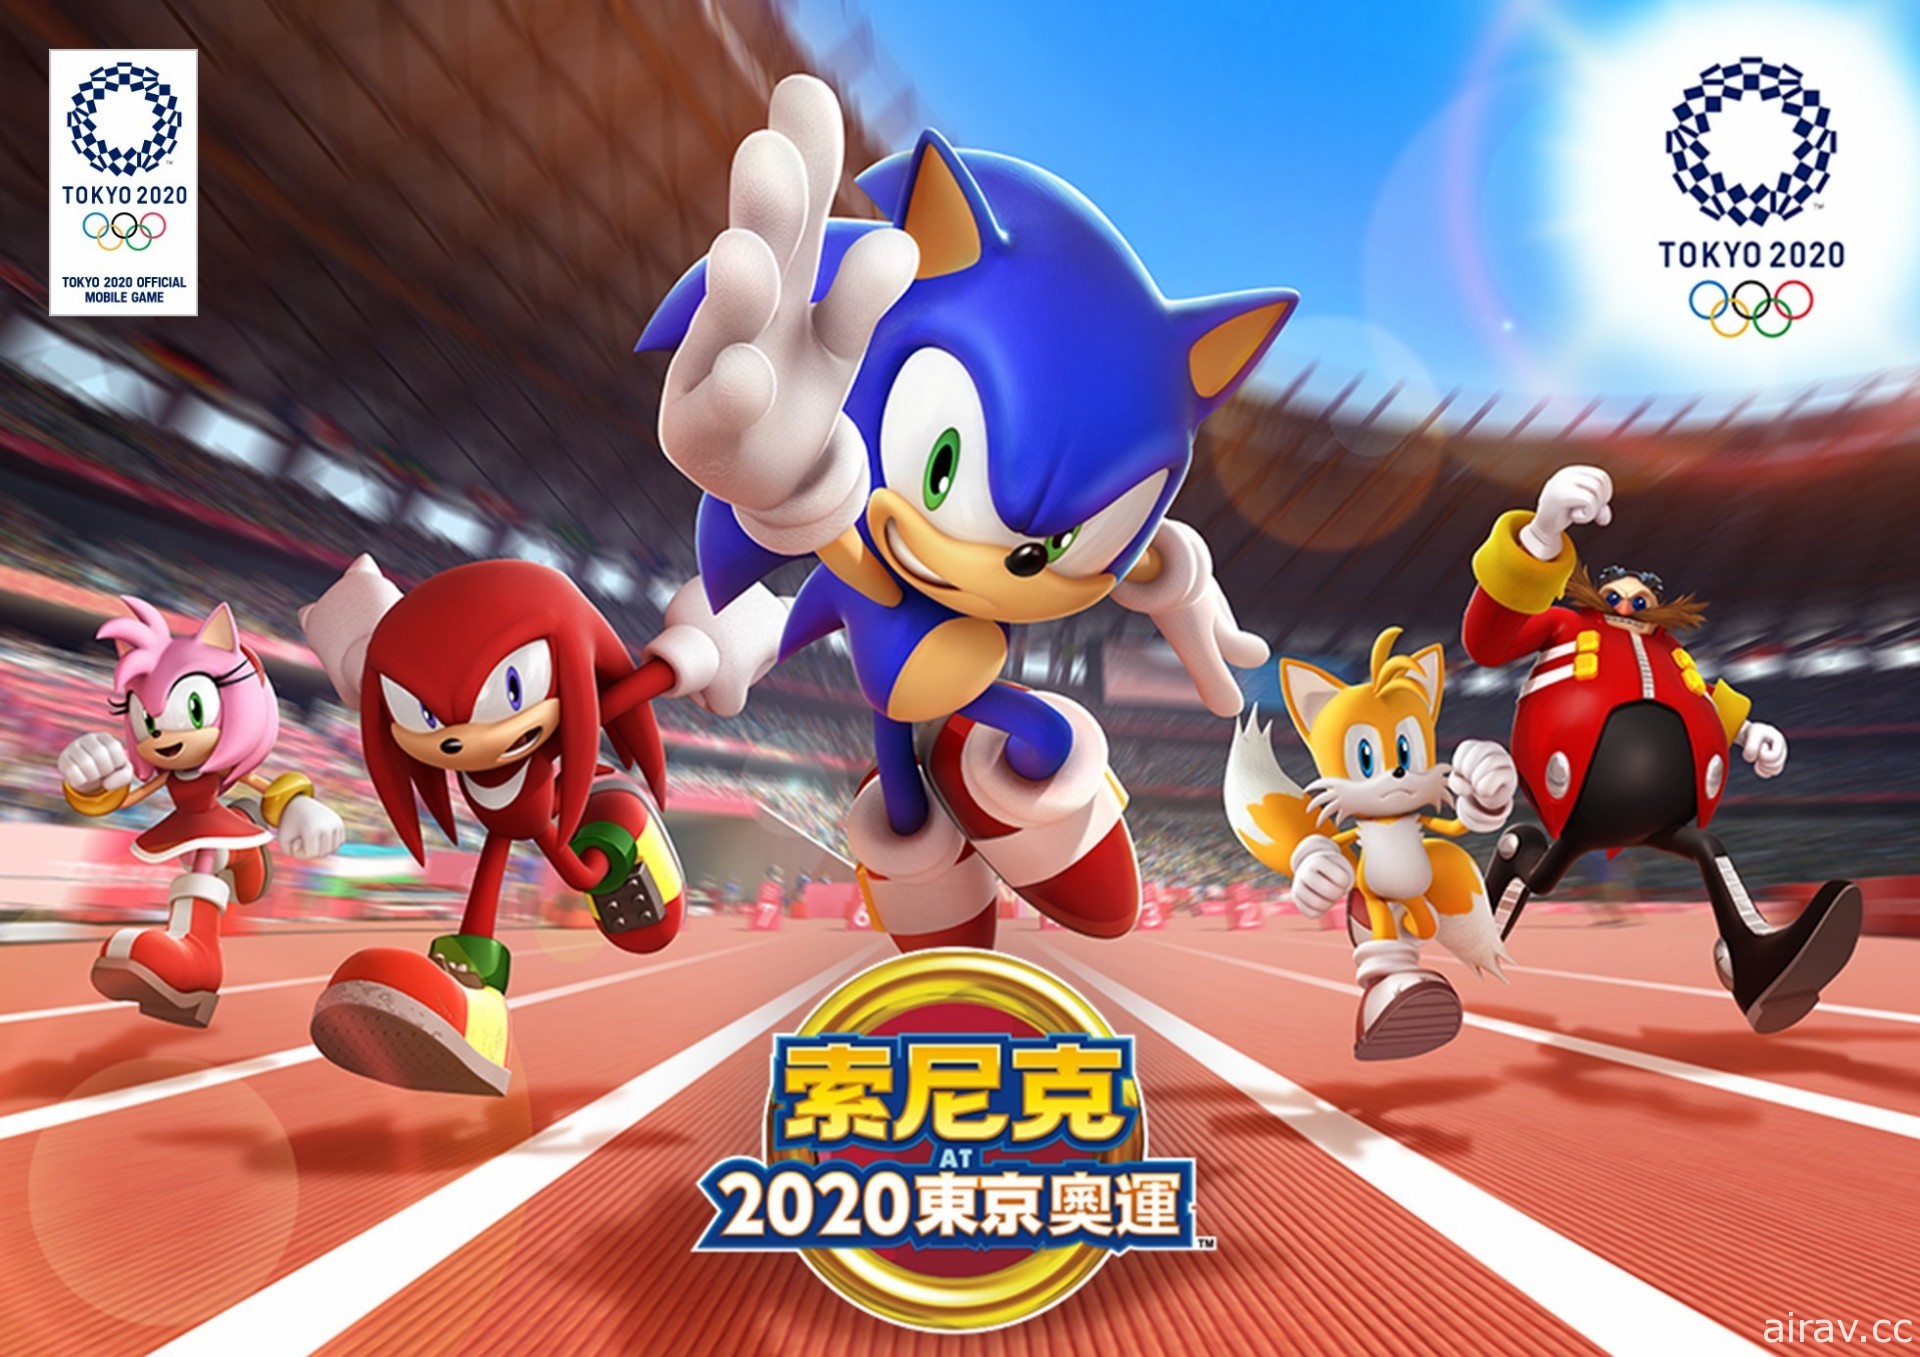 奧運官方手機遊戲《索尼克 AT 2020 東京奧運》離線版今日開始販售